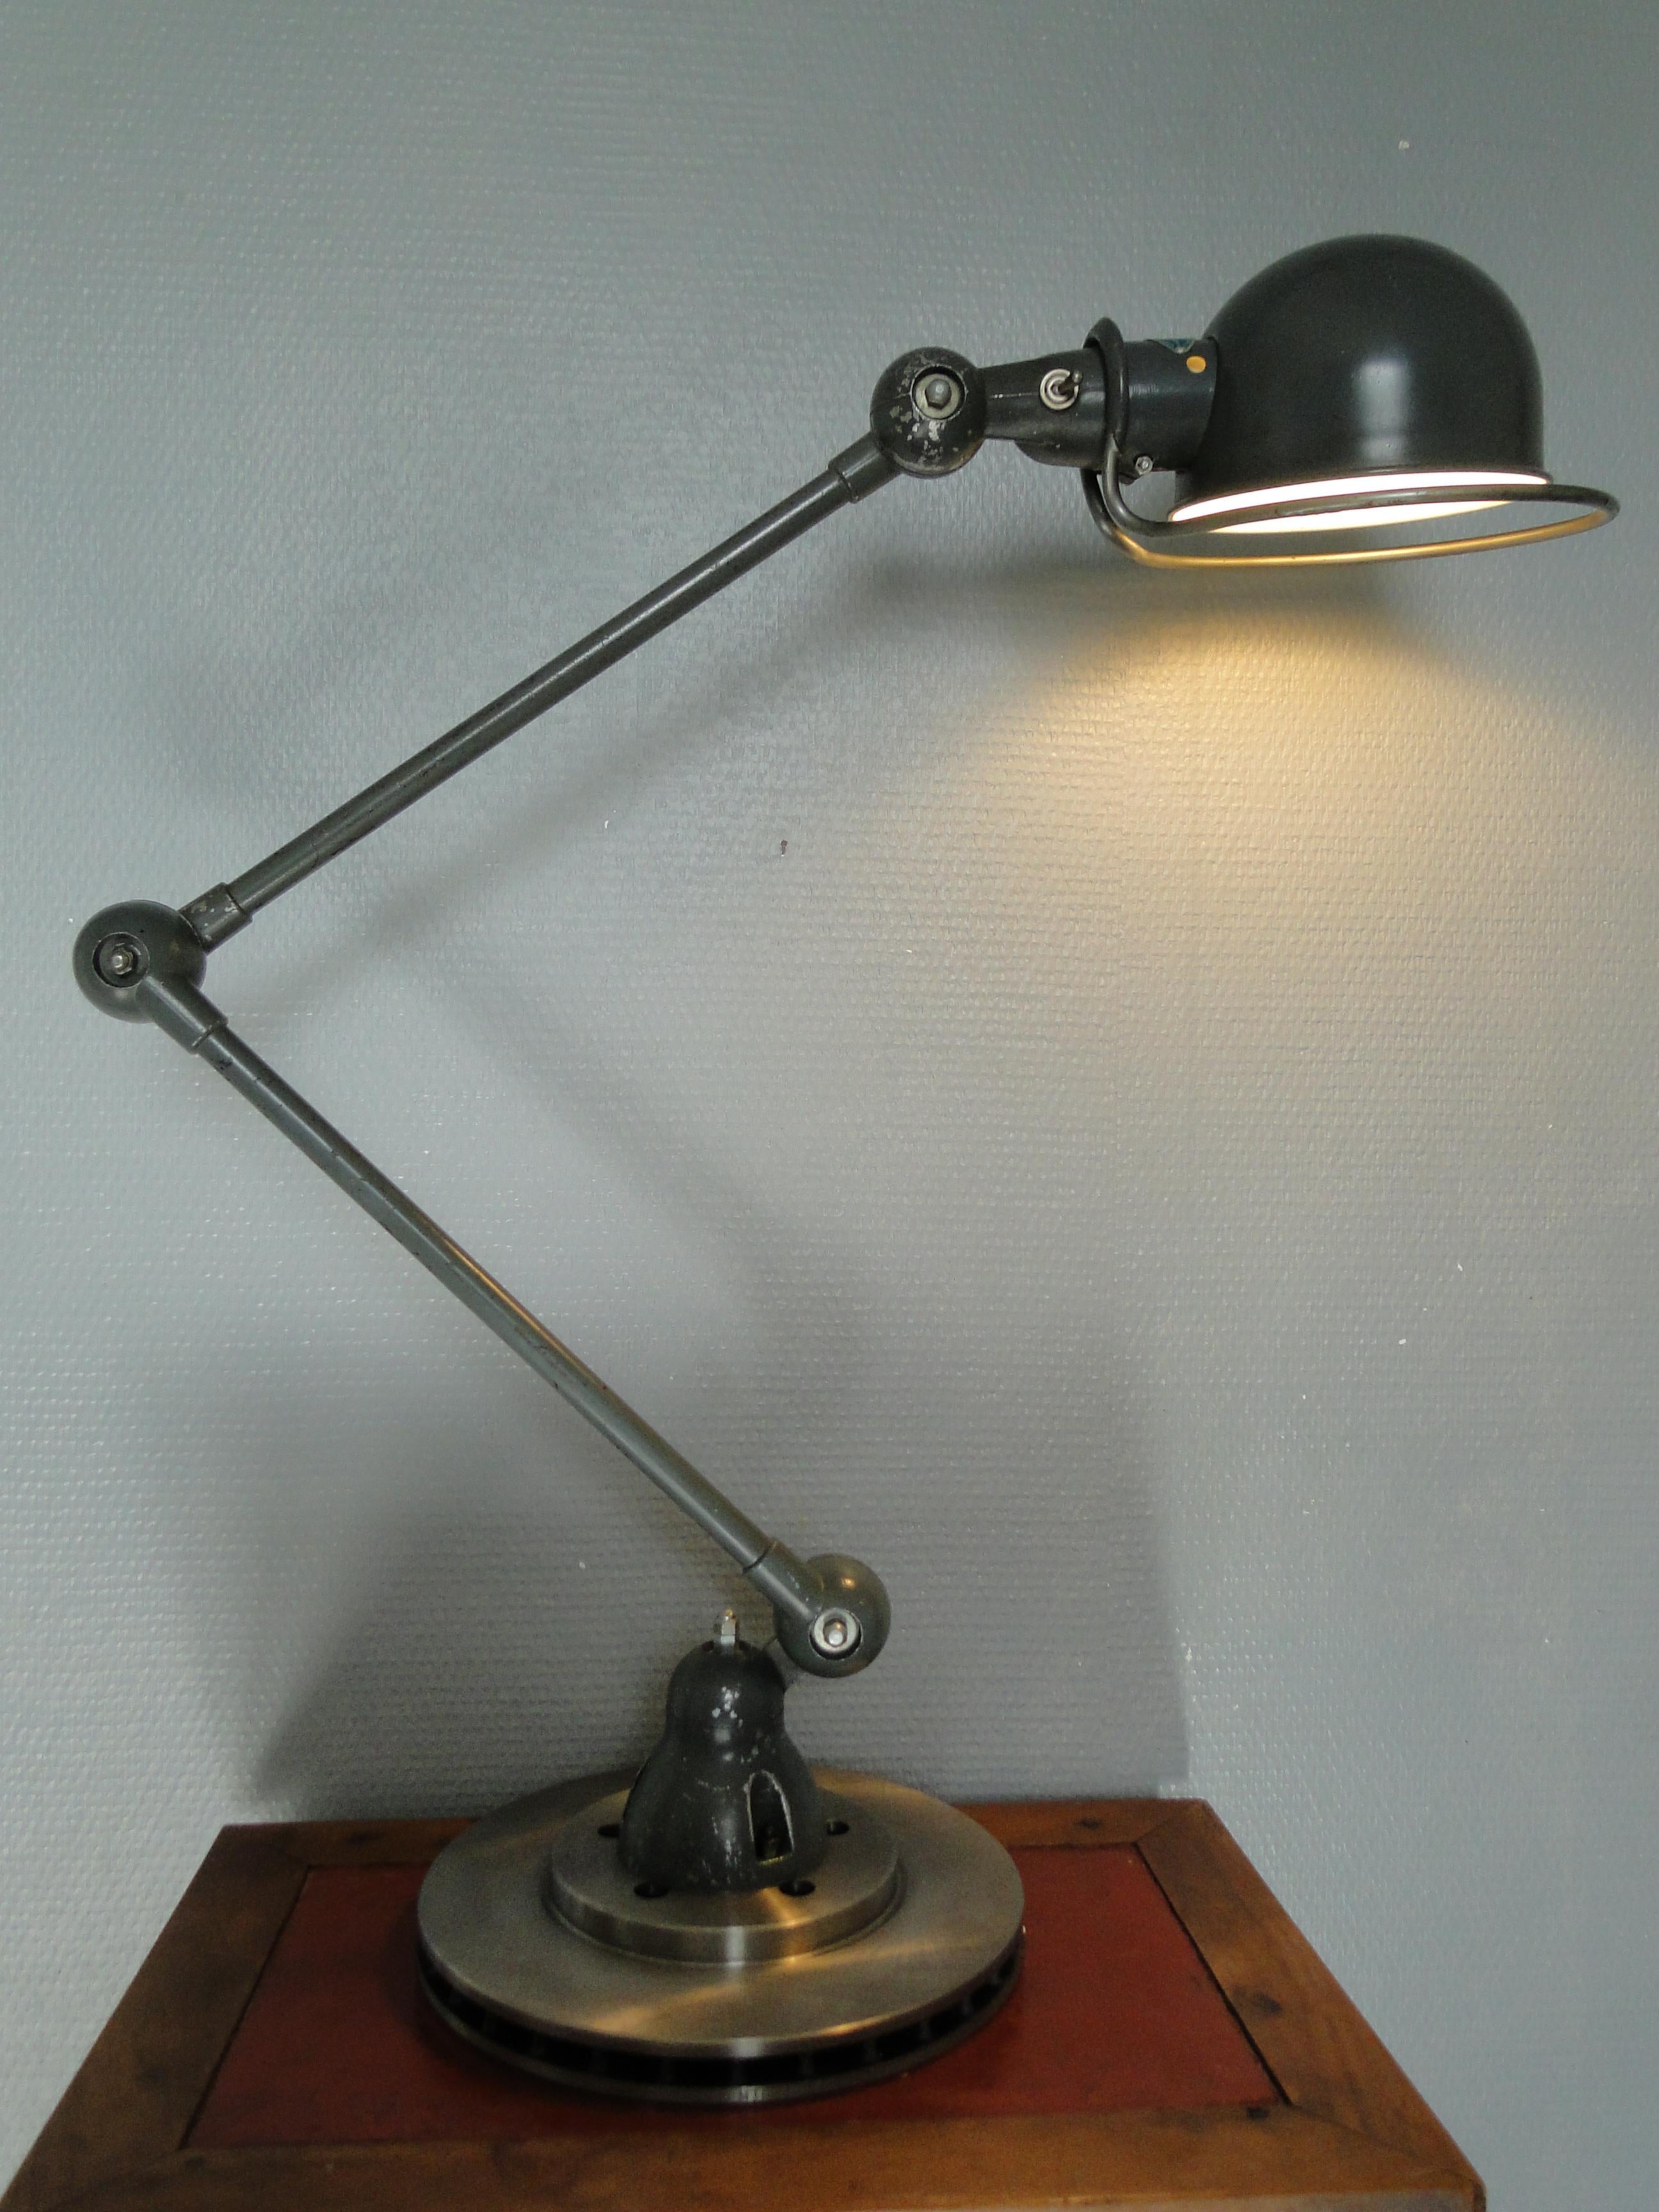 2 lampes armées JIELDE lampe de lecture lampe industrielle française

Conçu par Jean-Louis Domecq au début des années 1950.

Lampe Jielde ORIGINALE

La lampe repose sur un nouveau disque de frein ventilé, qui garantit une stabilité